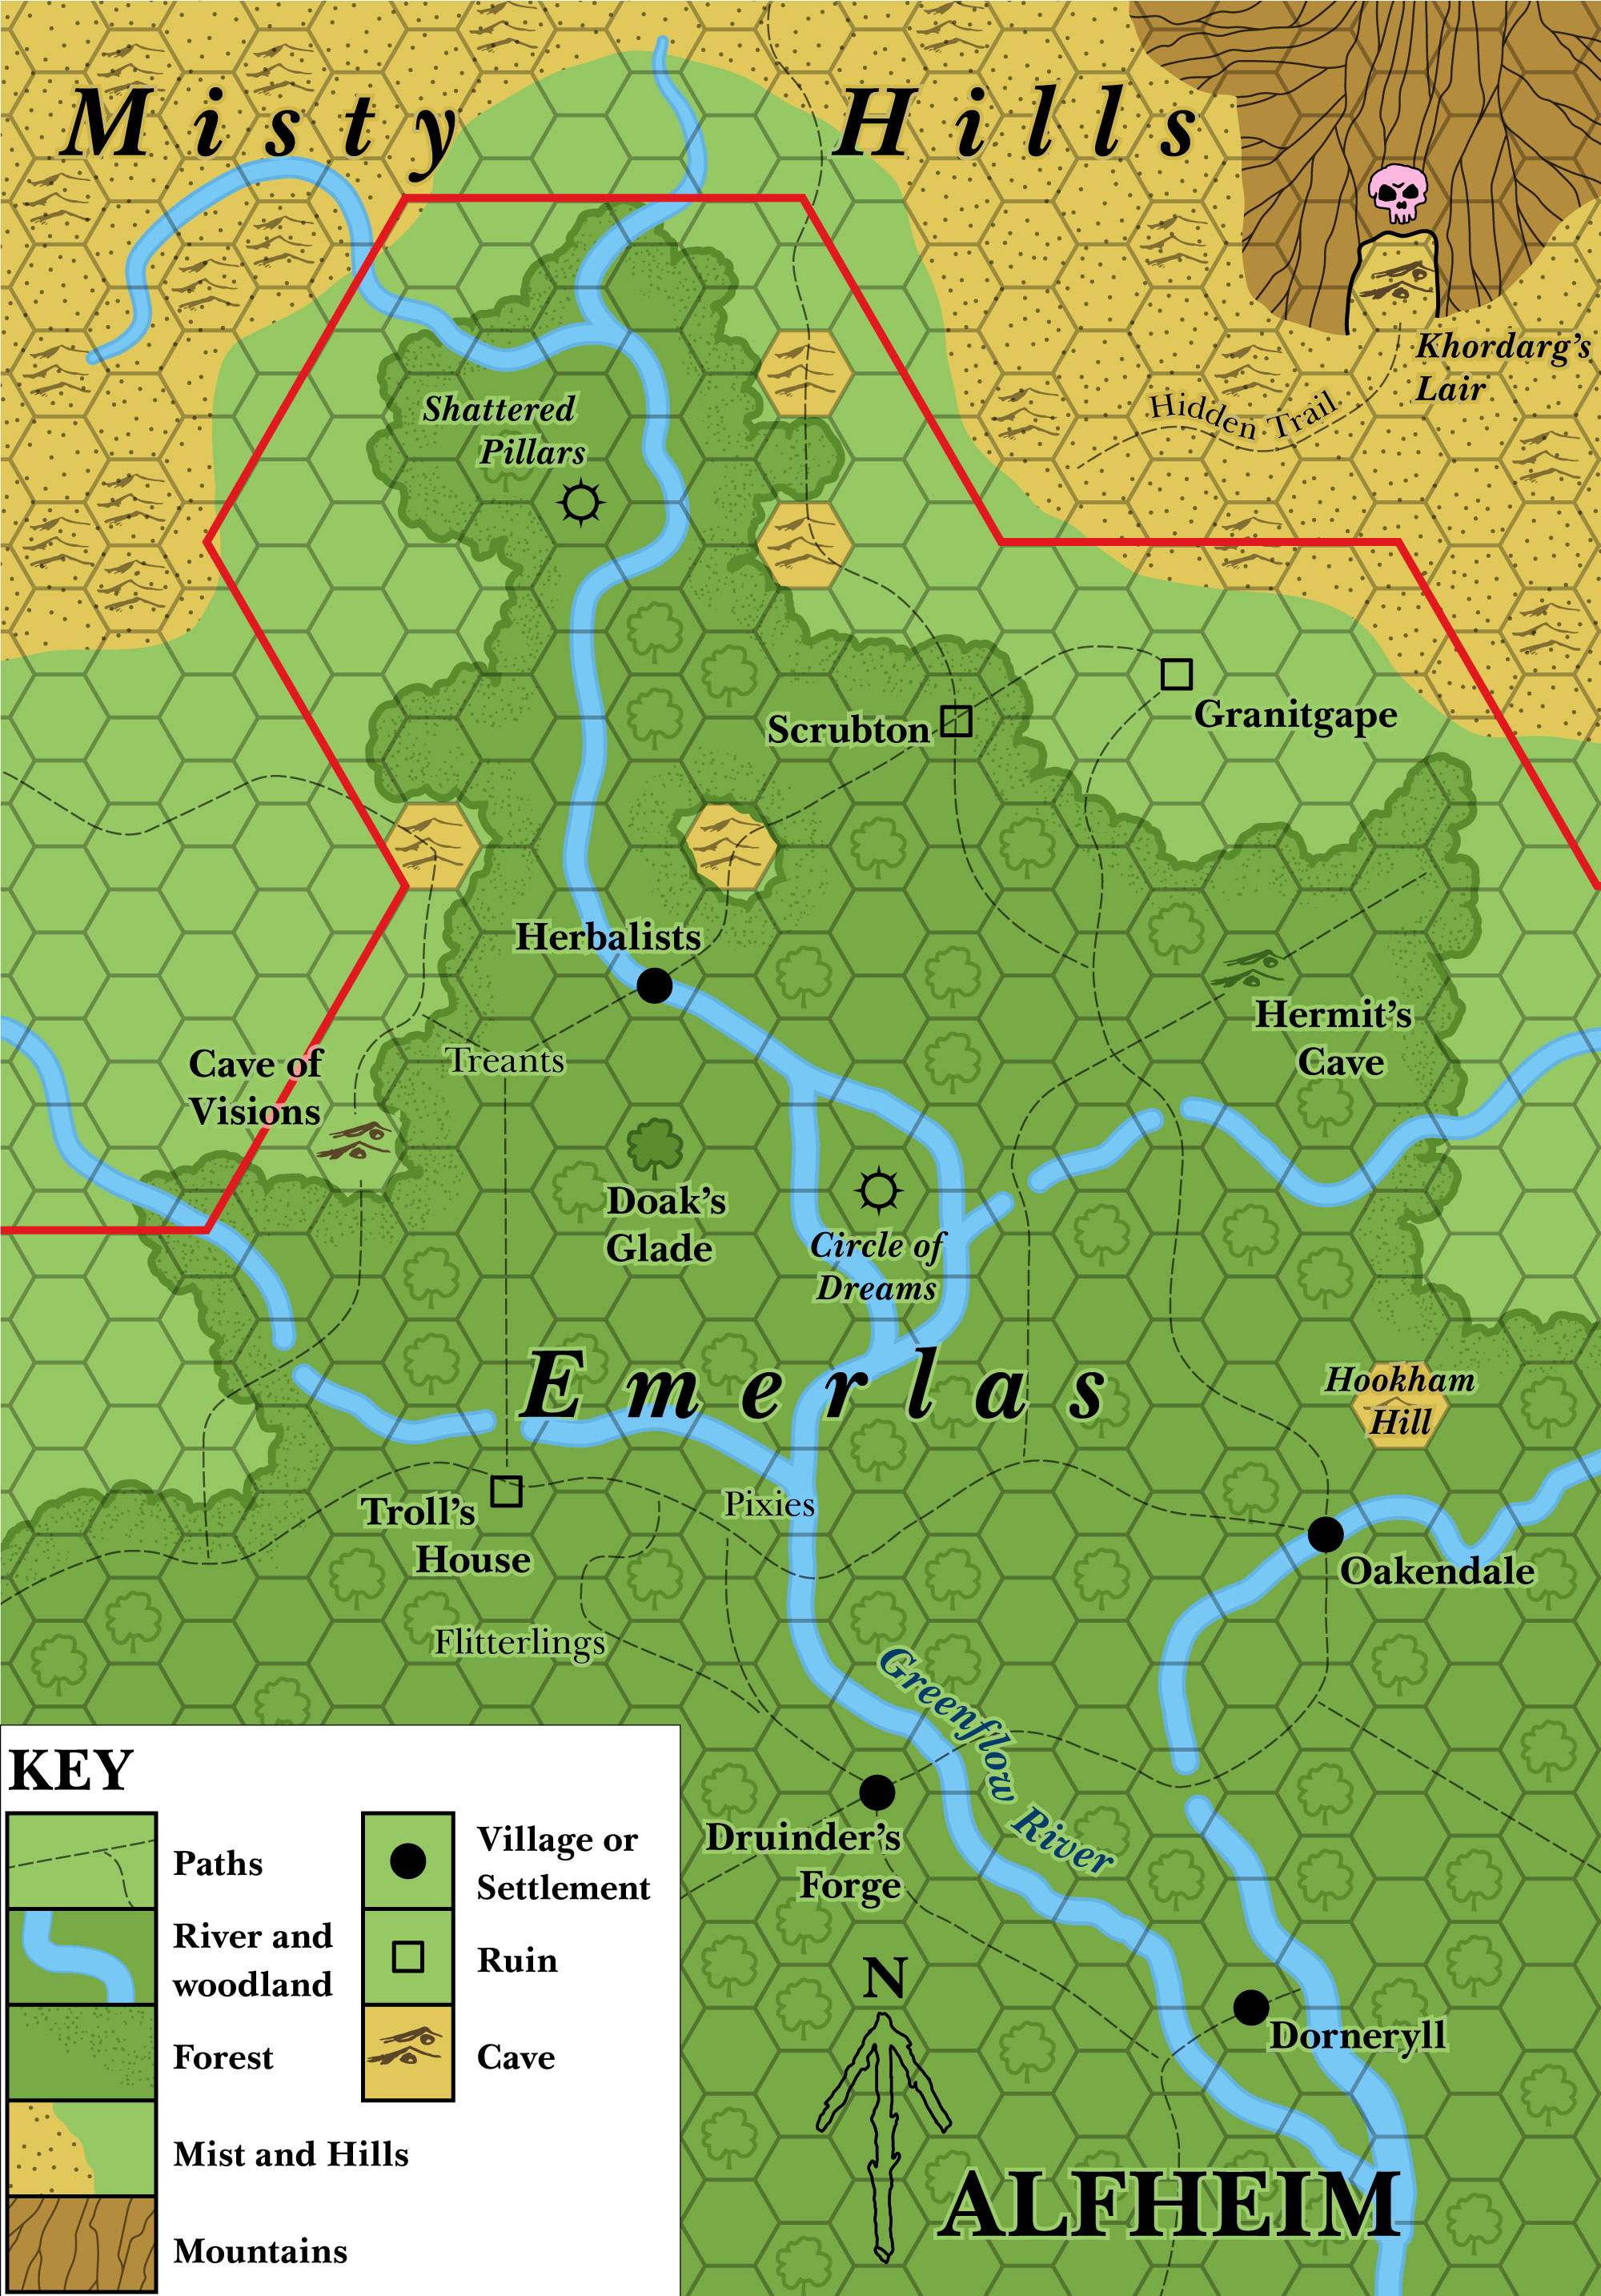 The Emerlas, 3 miles per hex (1985)